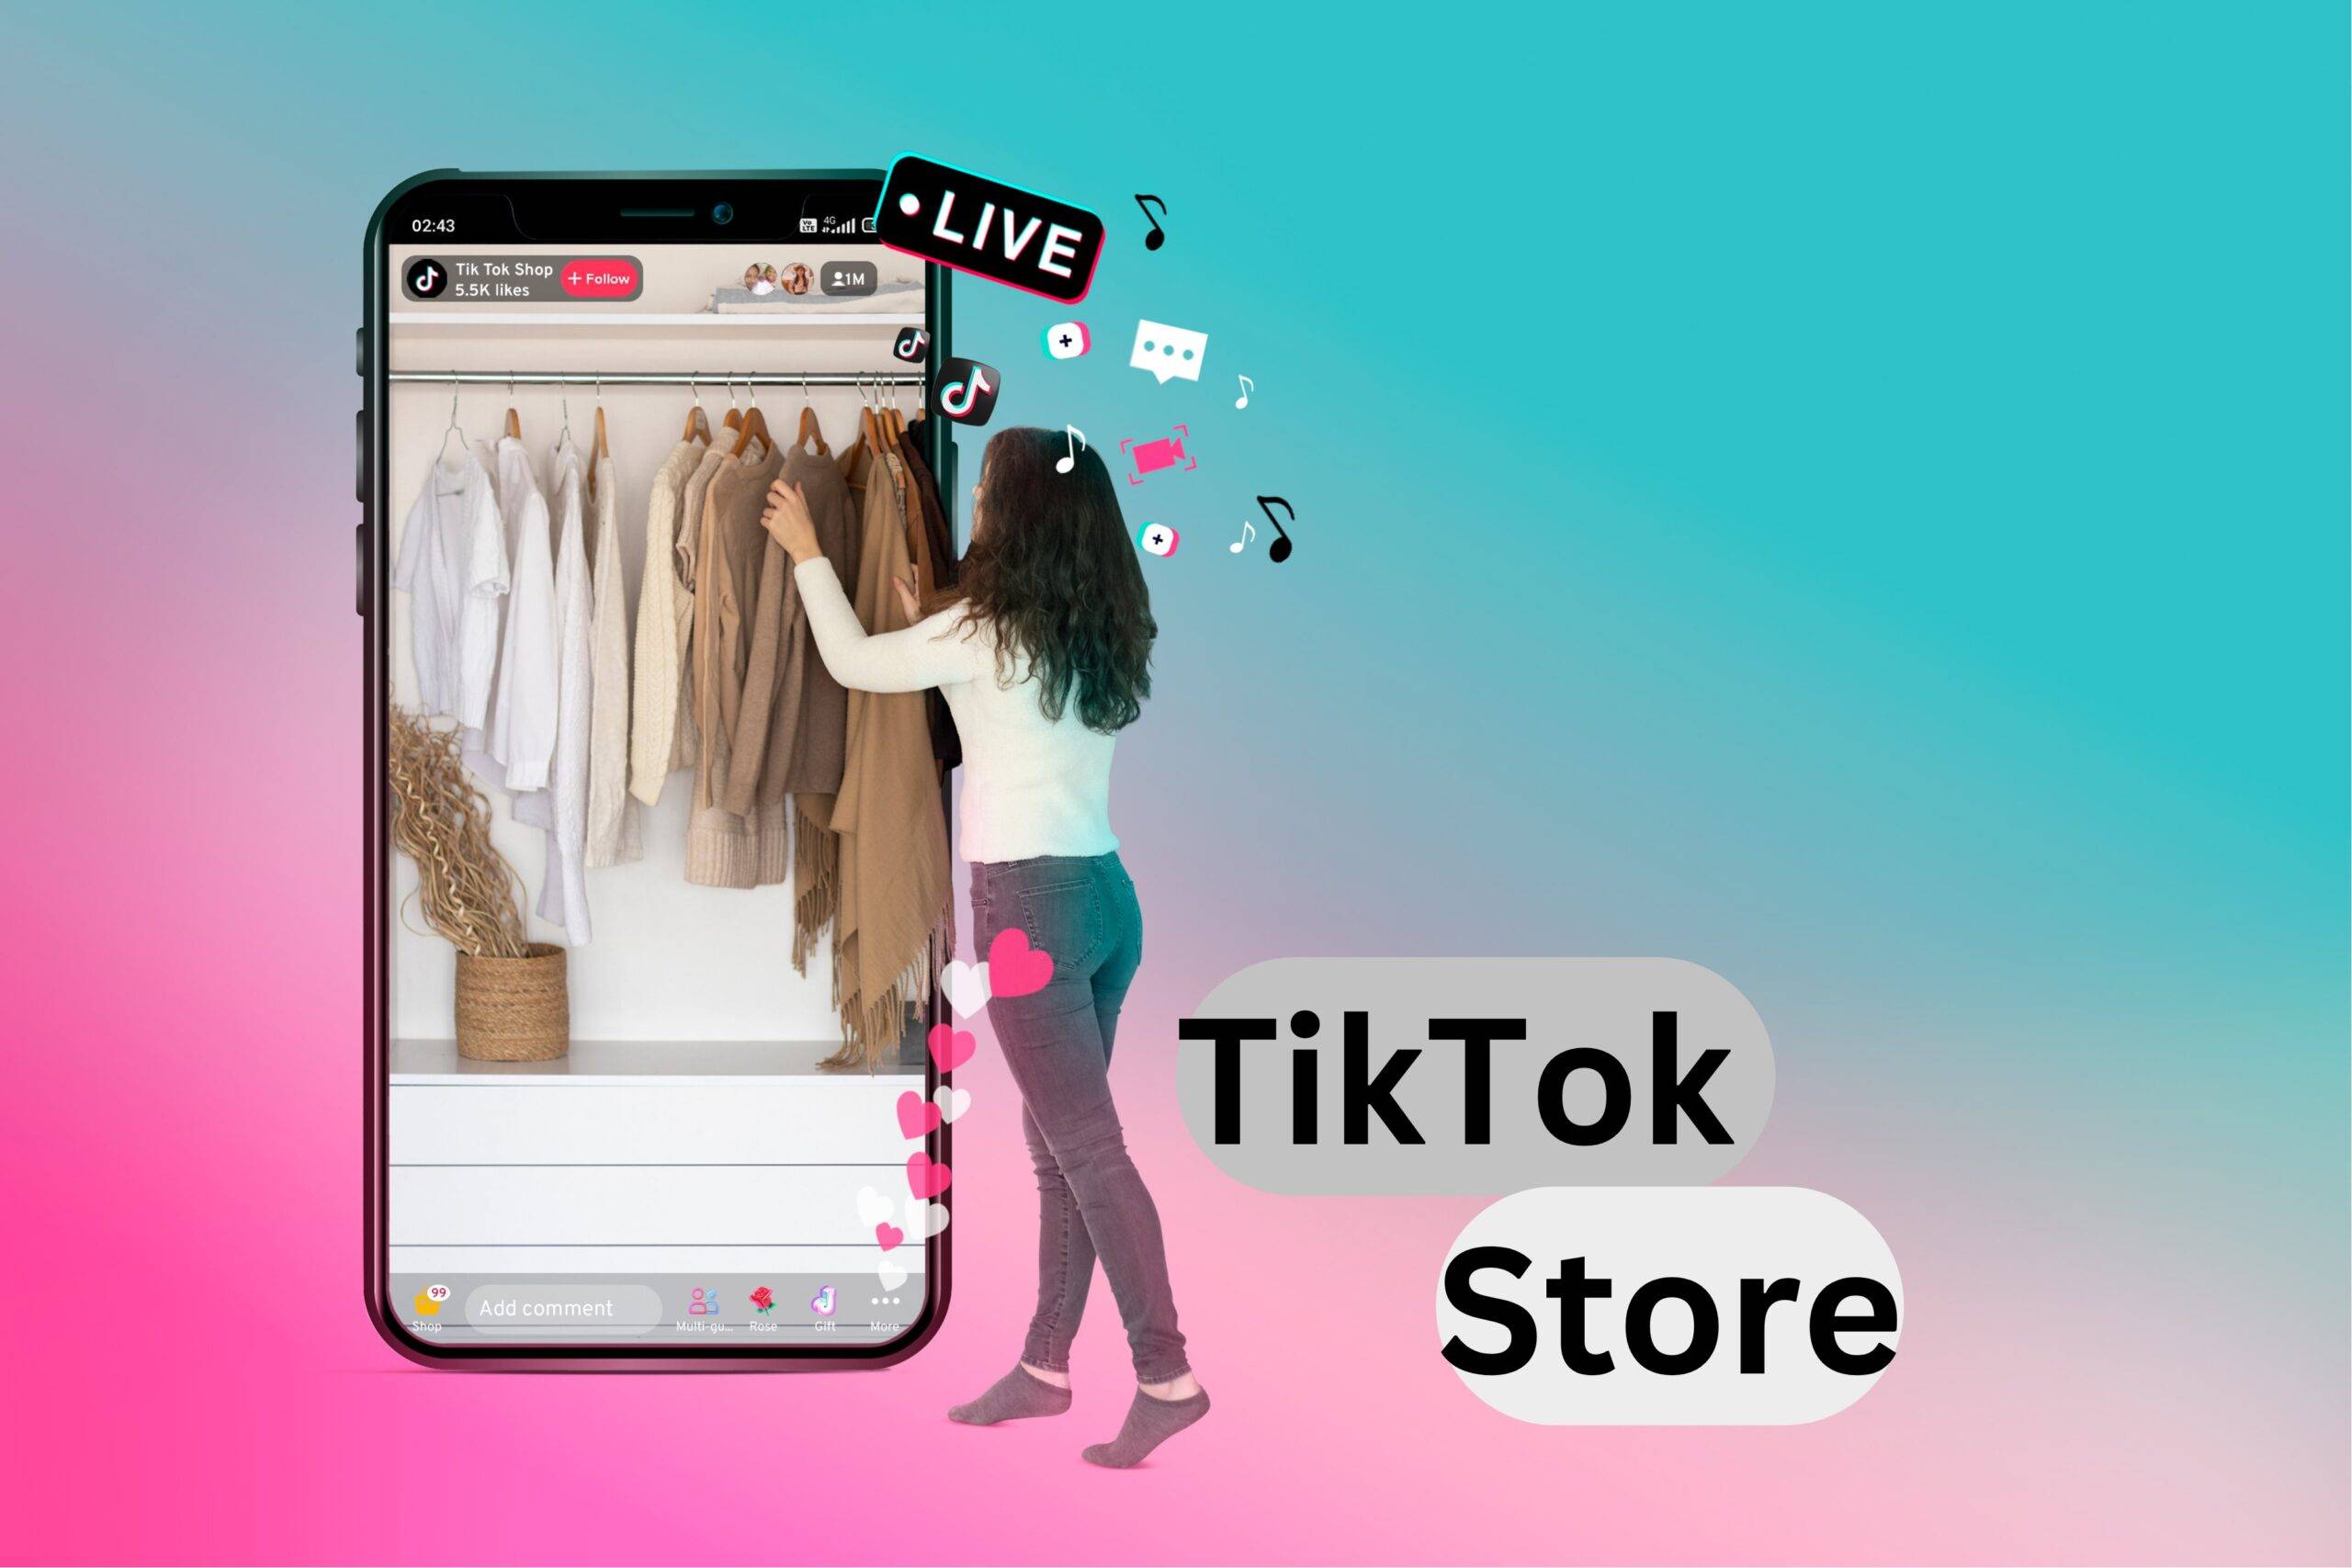 TikTok Store